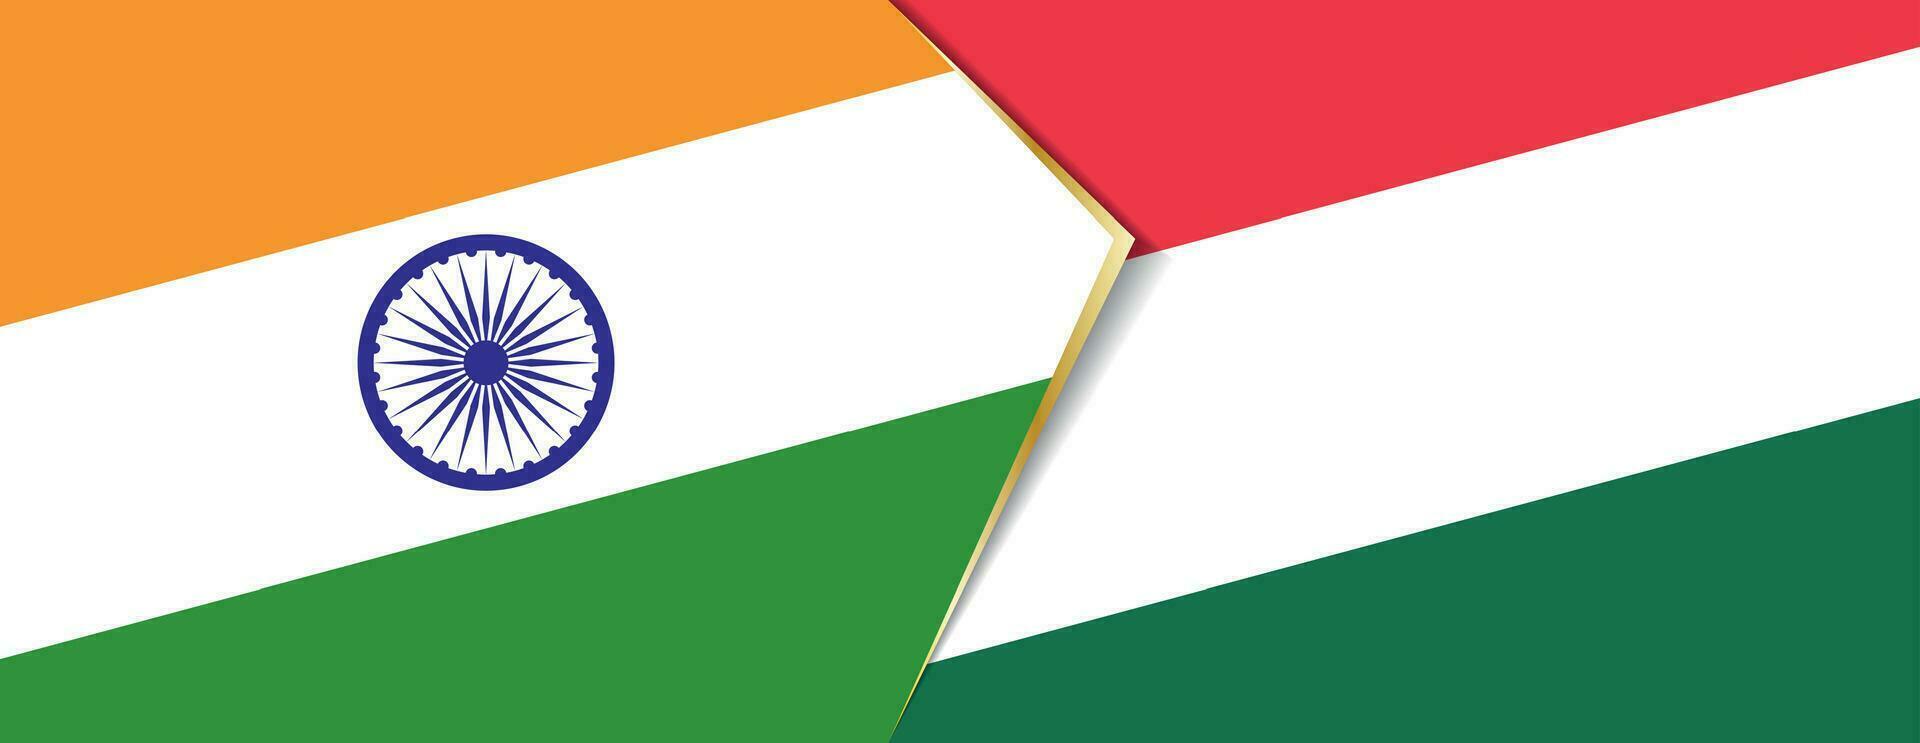 India y Hungría banderas, dos vector banderas